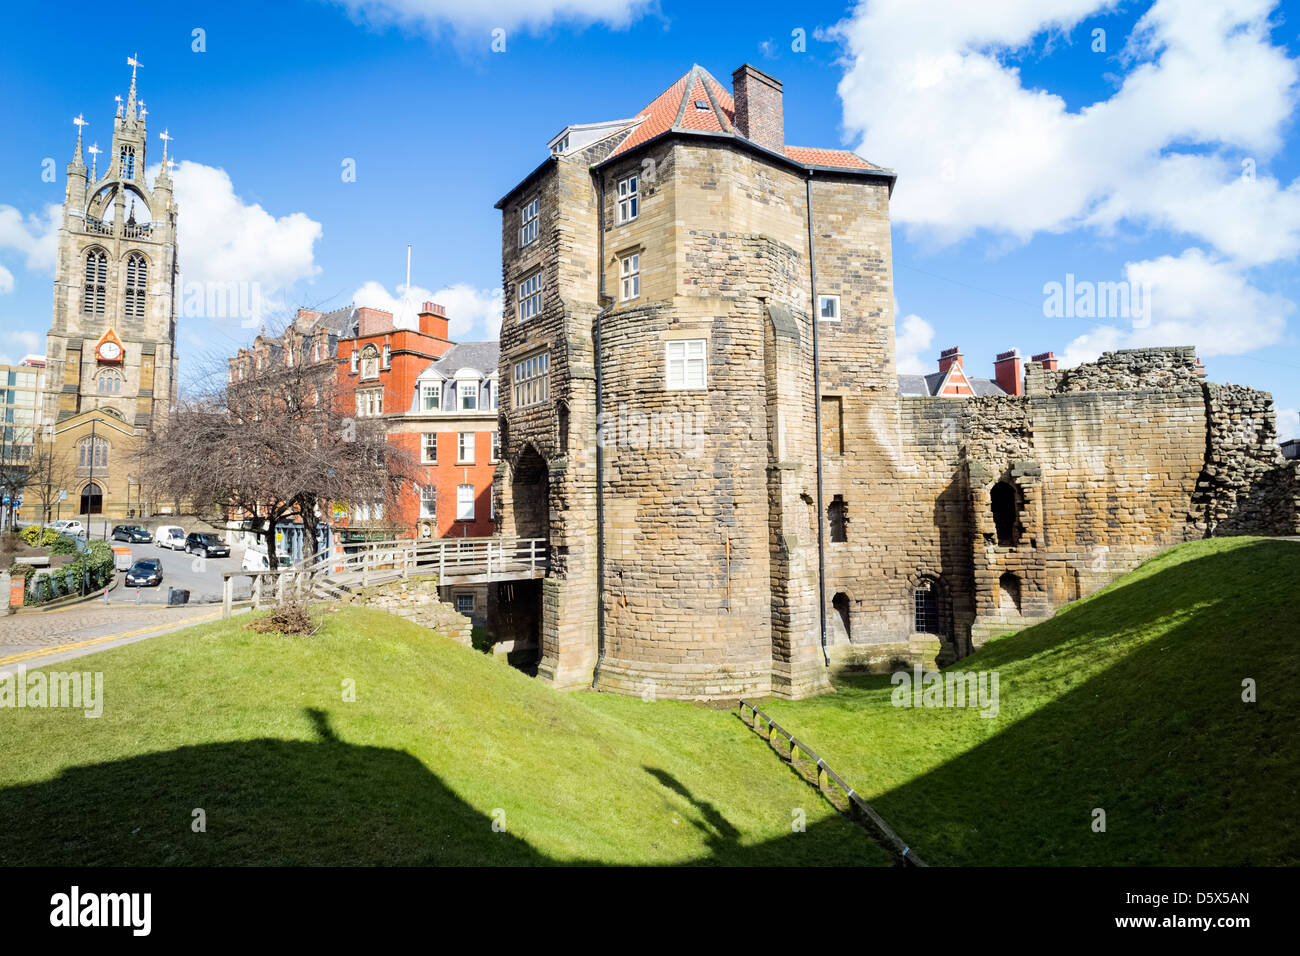 Mantenga de Newcastle. El castillo es una fortificación medieval en Inglaterra, que dio a la ciudad de Newcastle su nombre. Foto de stock